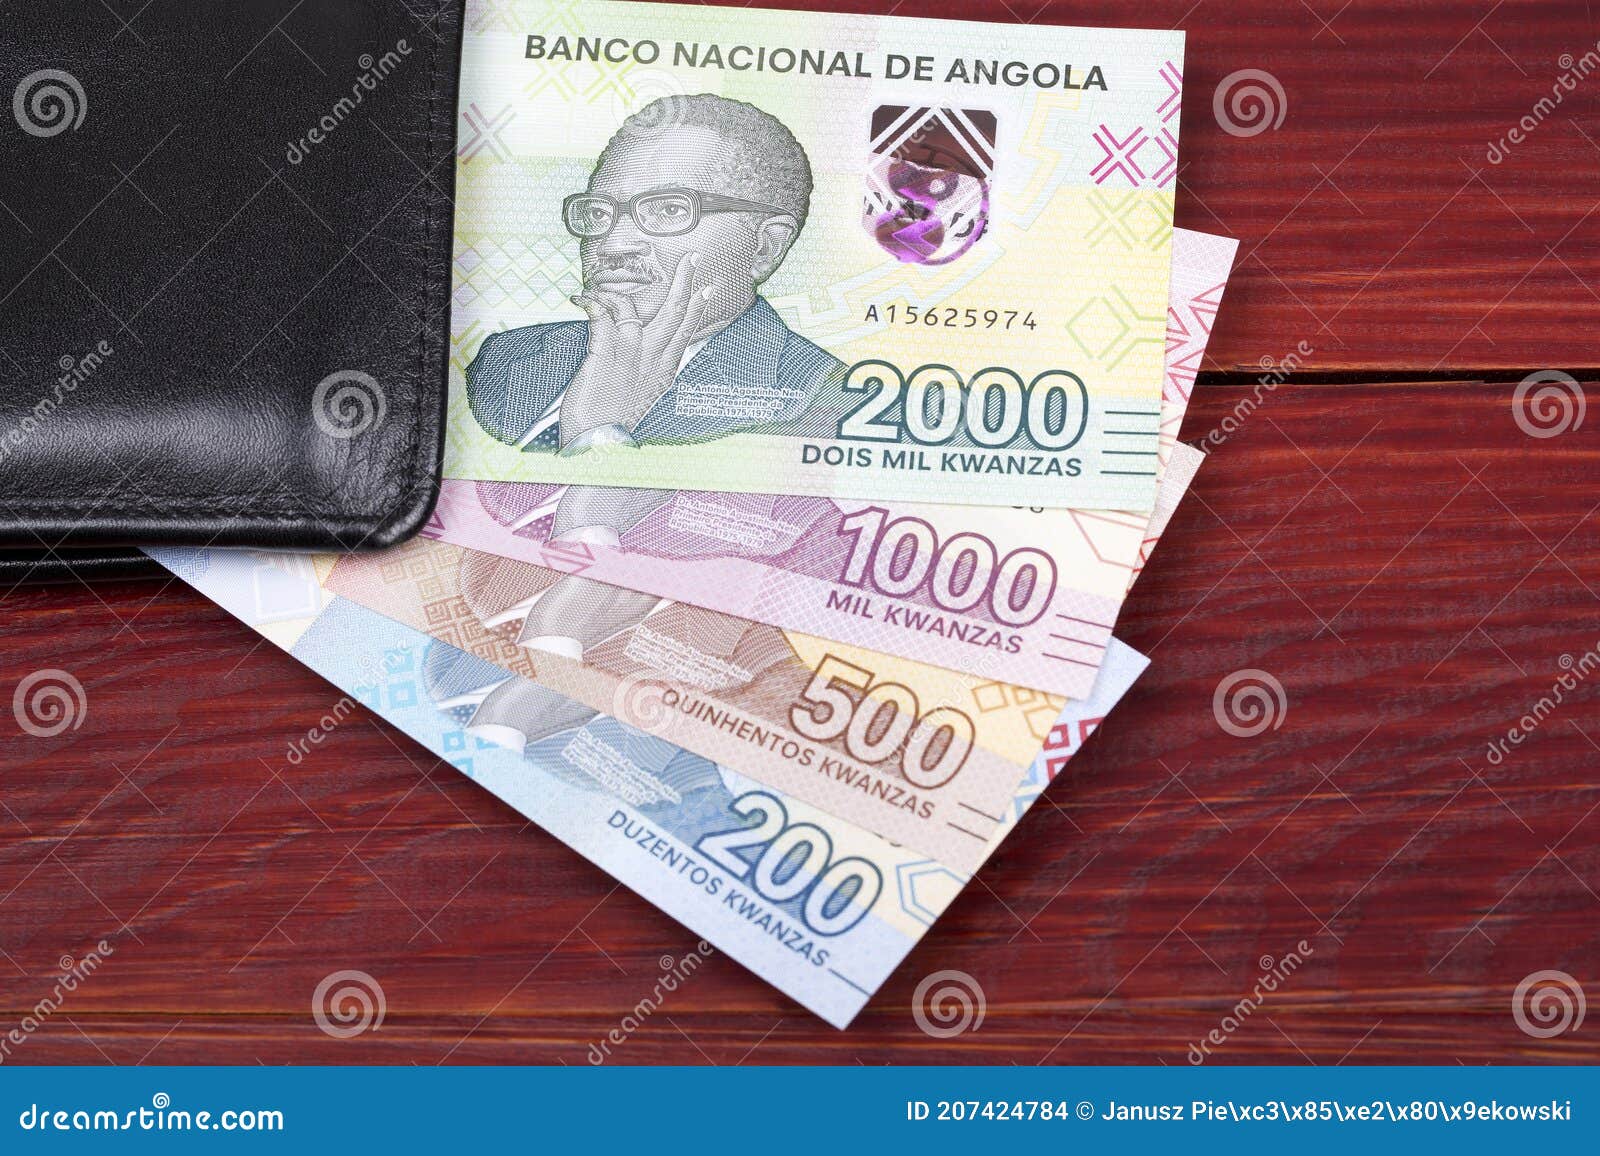 angolan money - kwanza a new series of banknotes